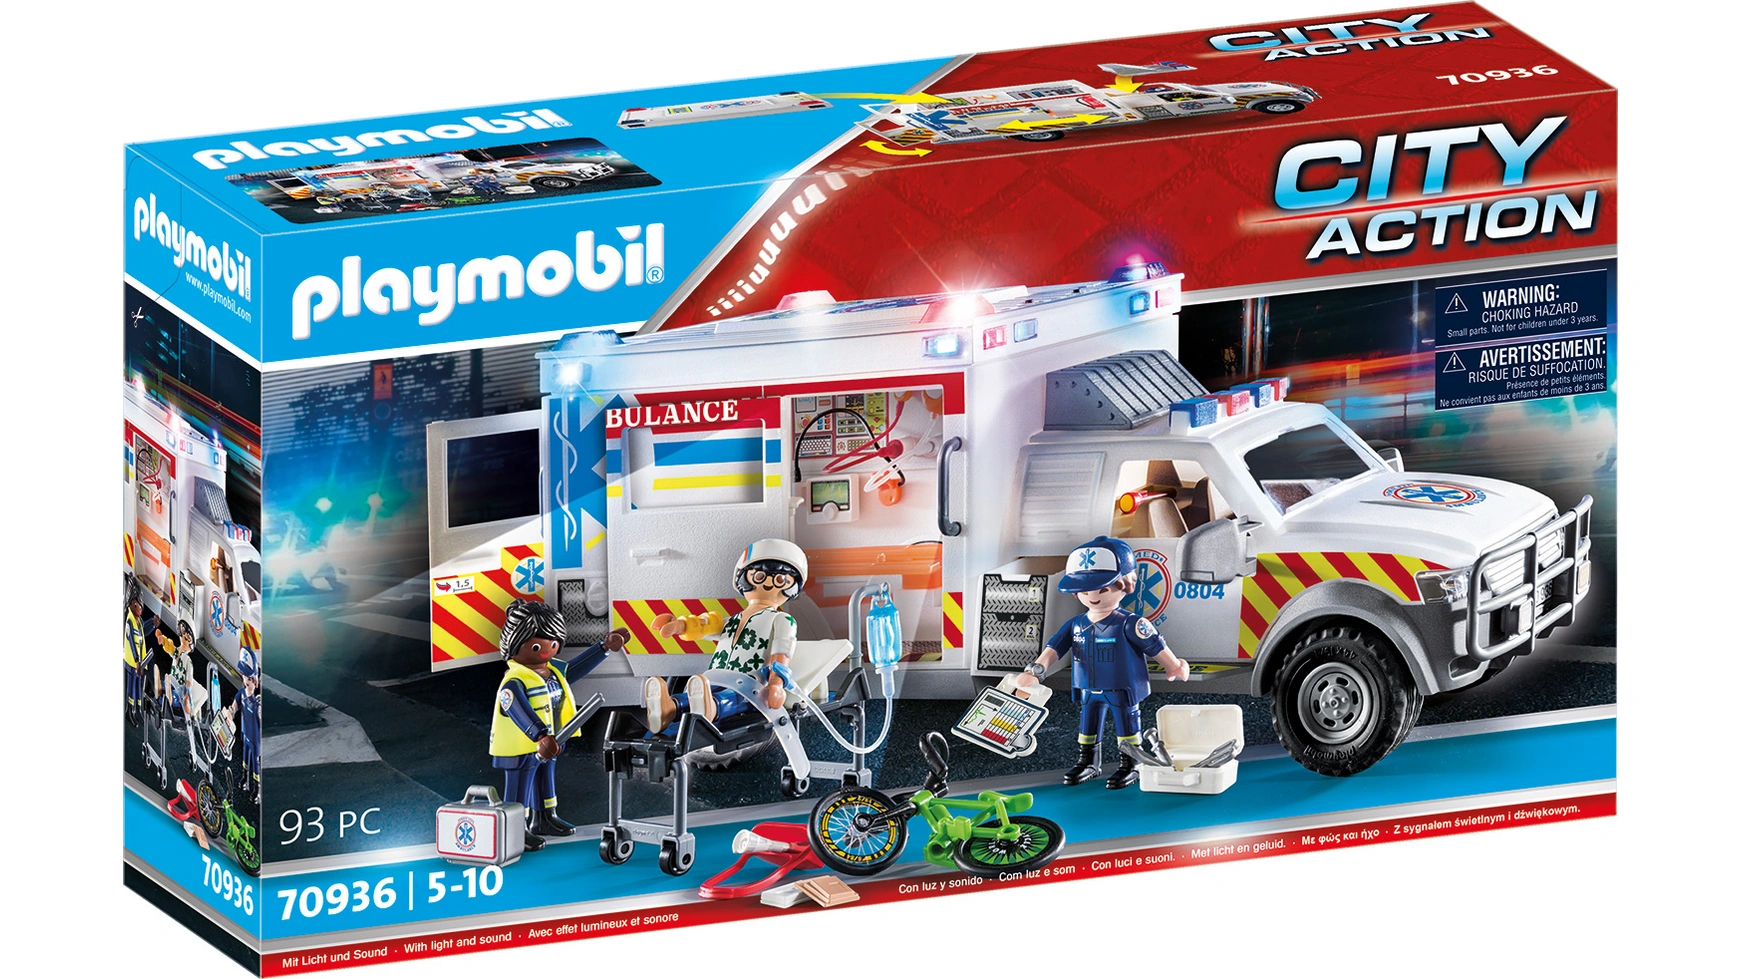 City action спасательная машина: скорая помощь сша Playmobil